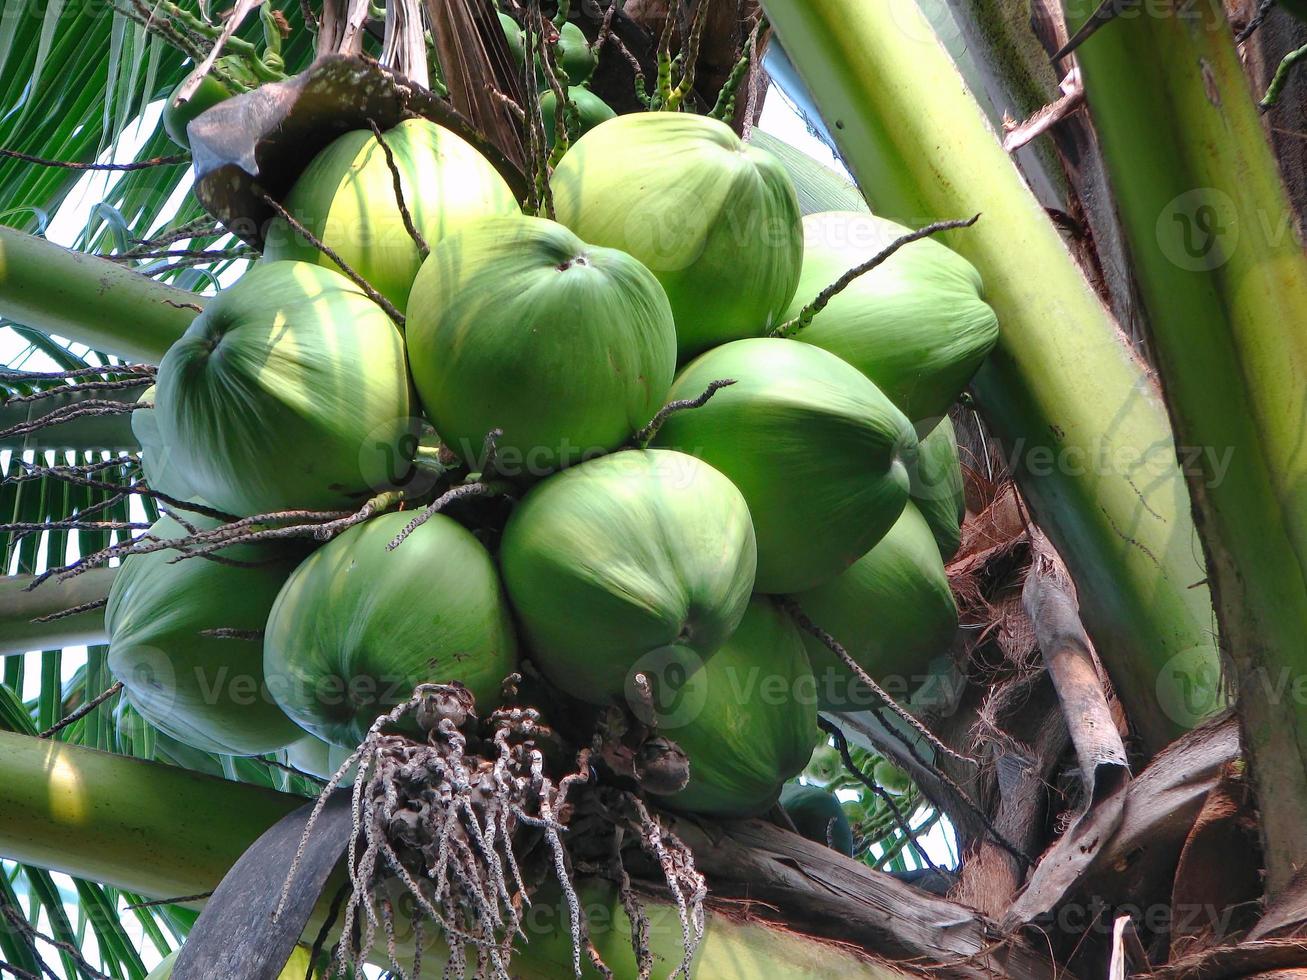 cerrar cocos verdes jóvenes tropicales frescos en los árboles foto